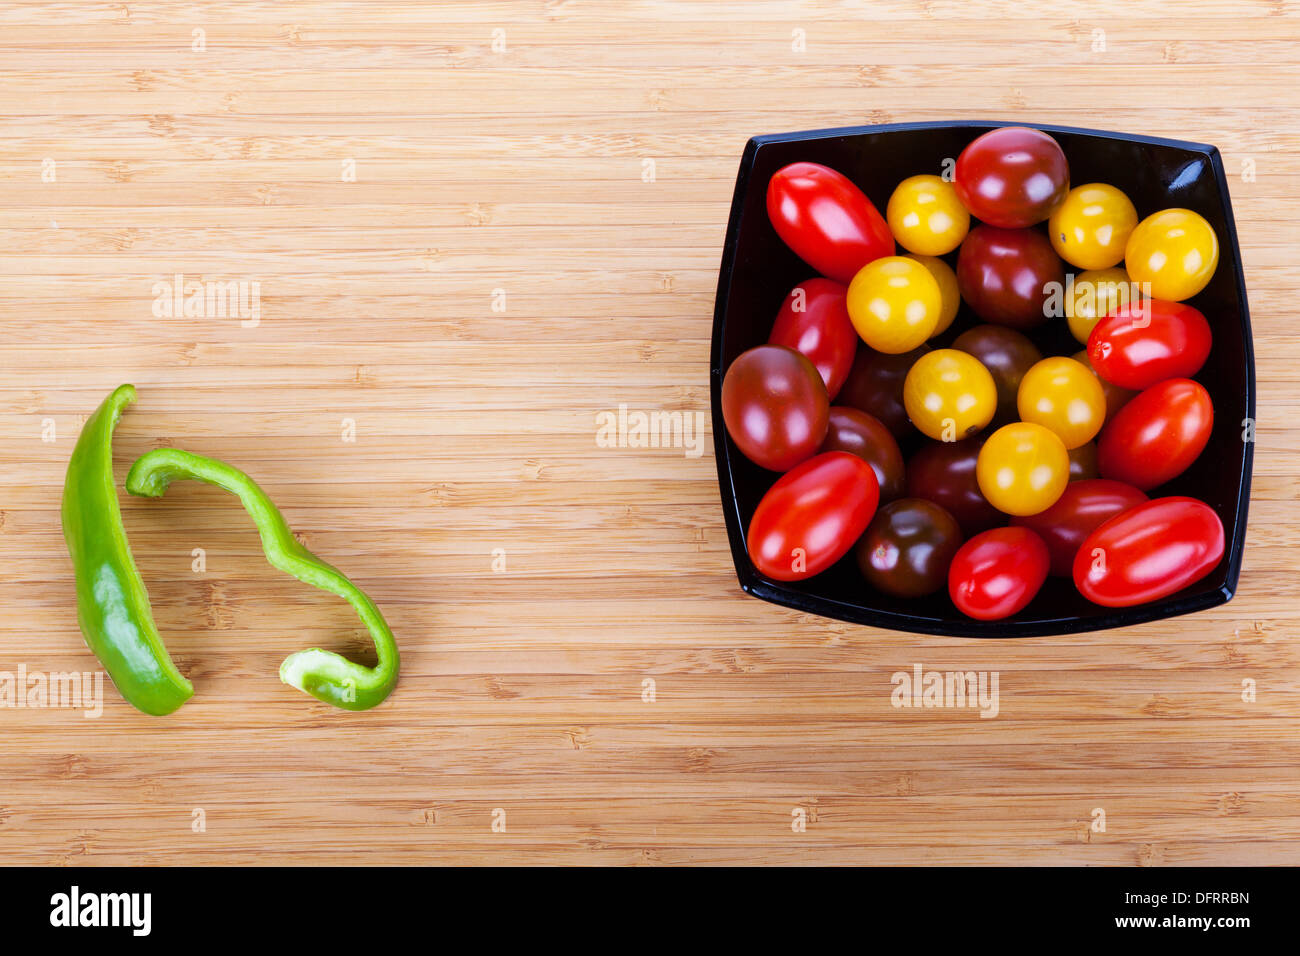 Tomates Cherry en la placa negra sobre la mesa de madera con rebanadas de pimiento verde Foto de stock